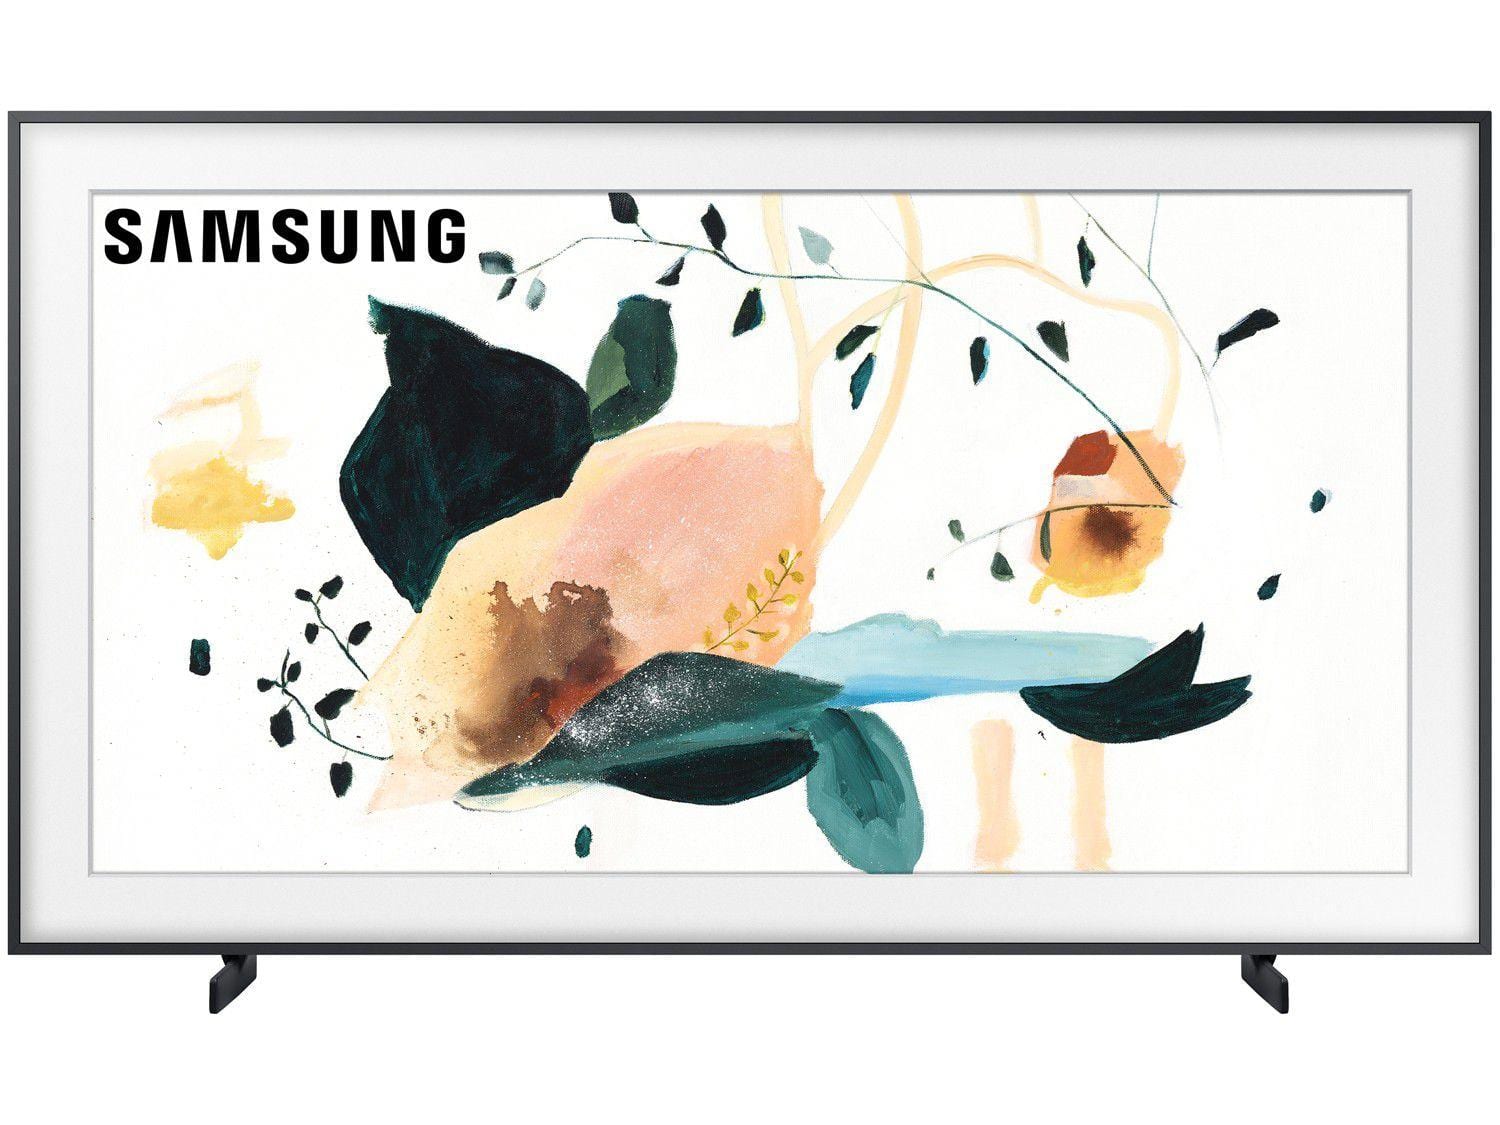 Smart TV QLED 55″ UHD 4K Samsung The Frame QN55LS03T Modo Arte, Modo Ambiente 3.0, Molduras Customizáveis, Única Conexão e Suporte No-Gap – 2020